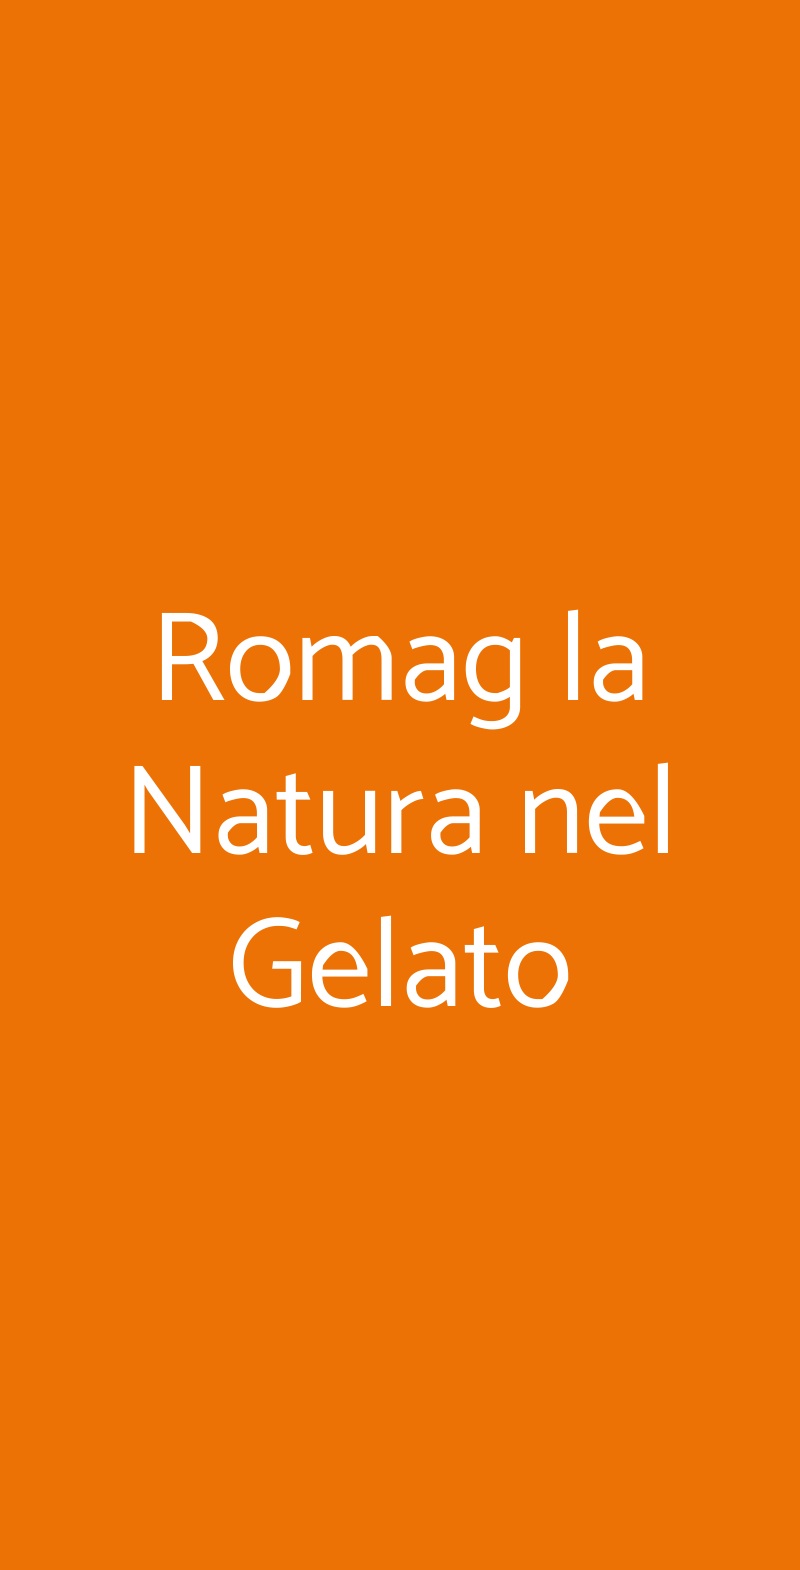 Romag la Natura nel Gelato Roma menù 1 pagina